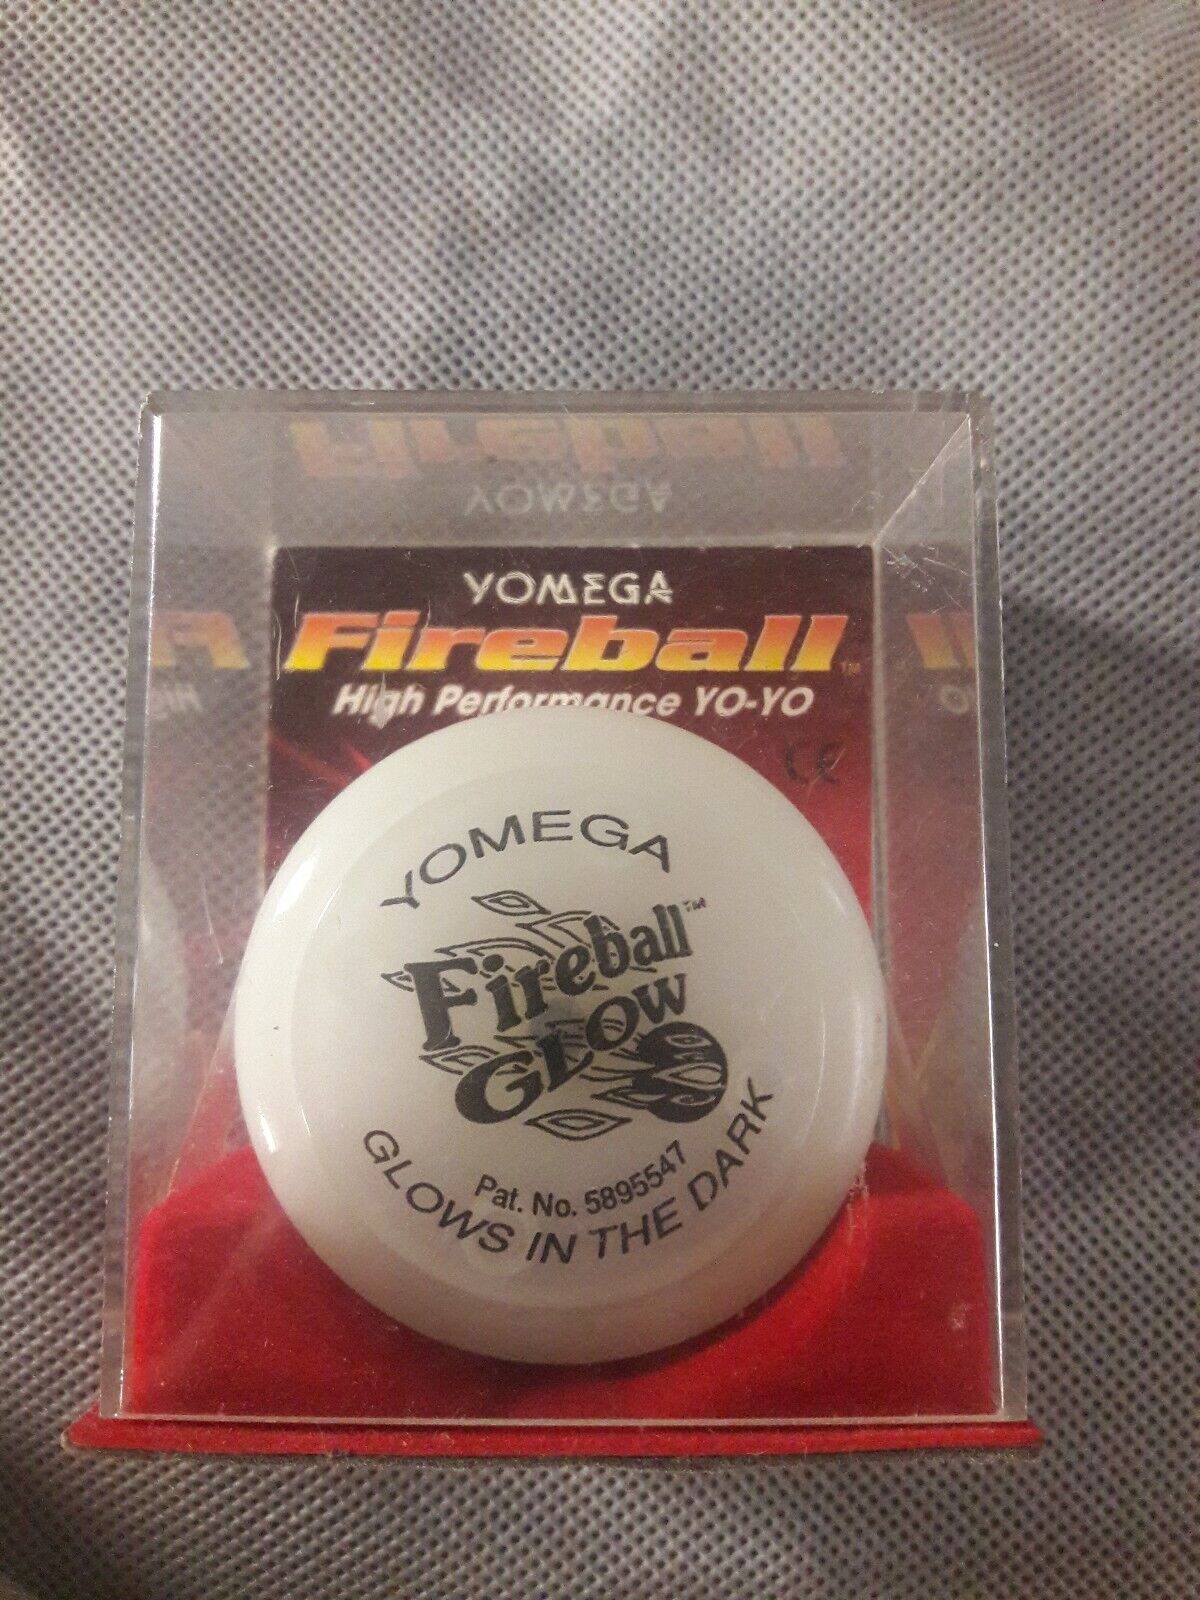 Brand New Yomega Fireball Glow in the dark Yo-yo